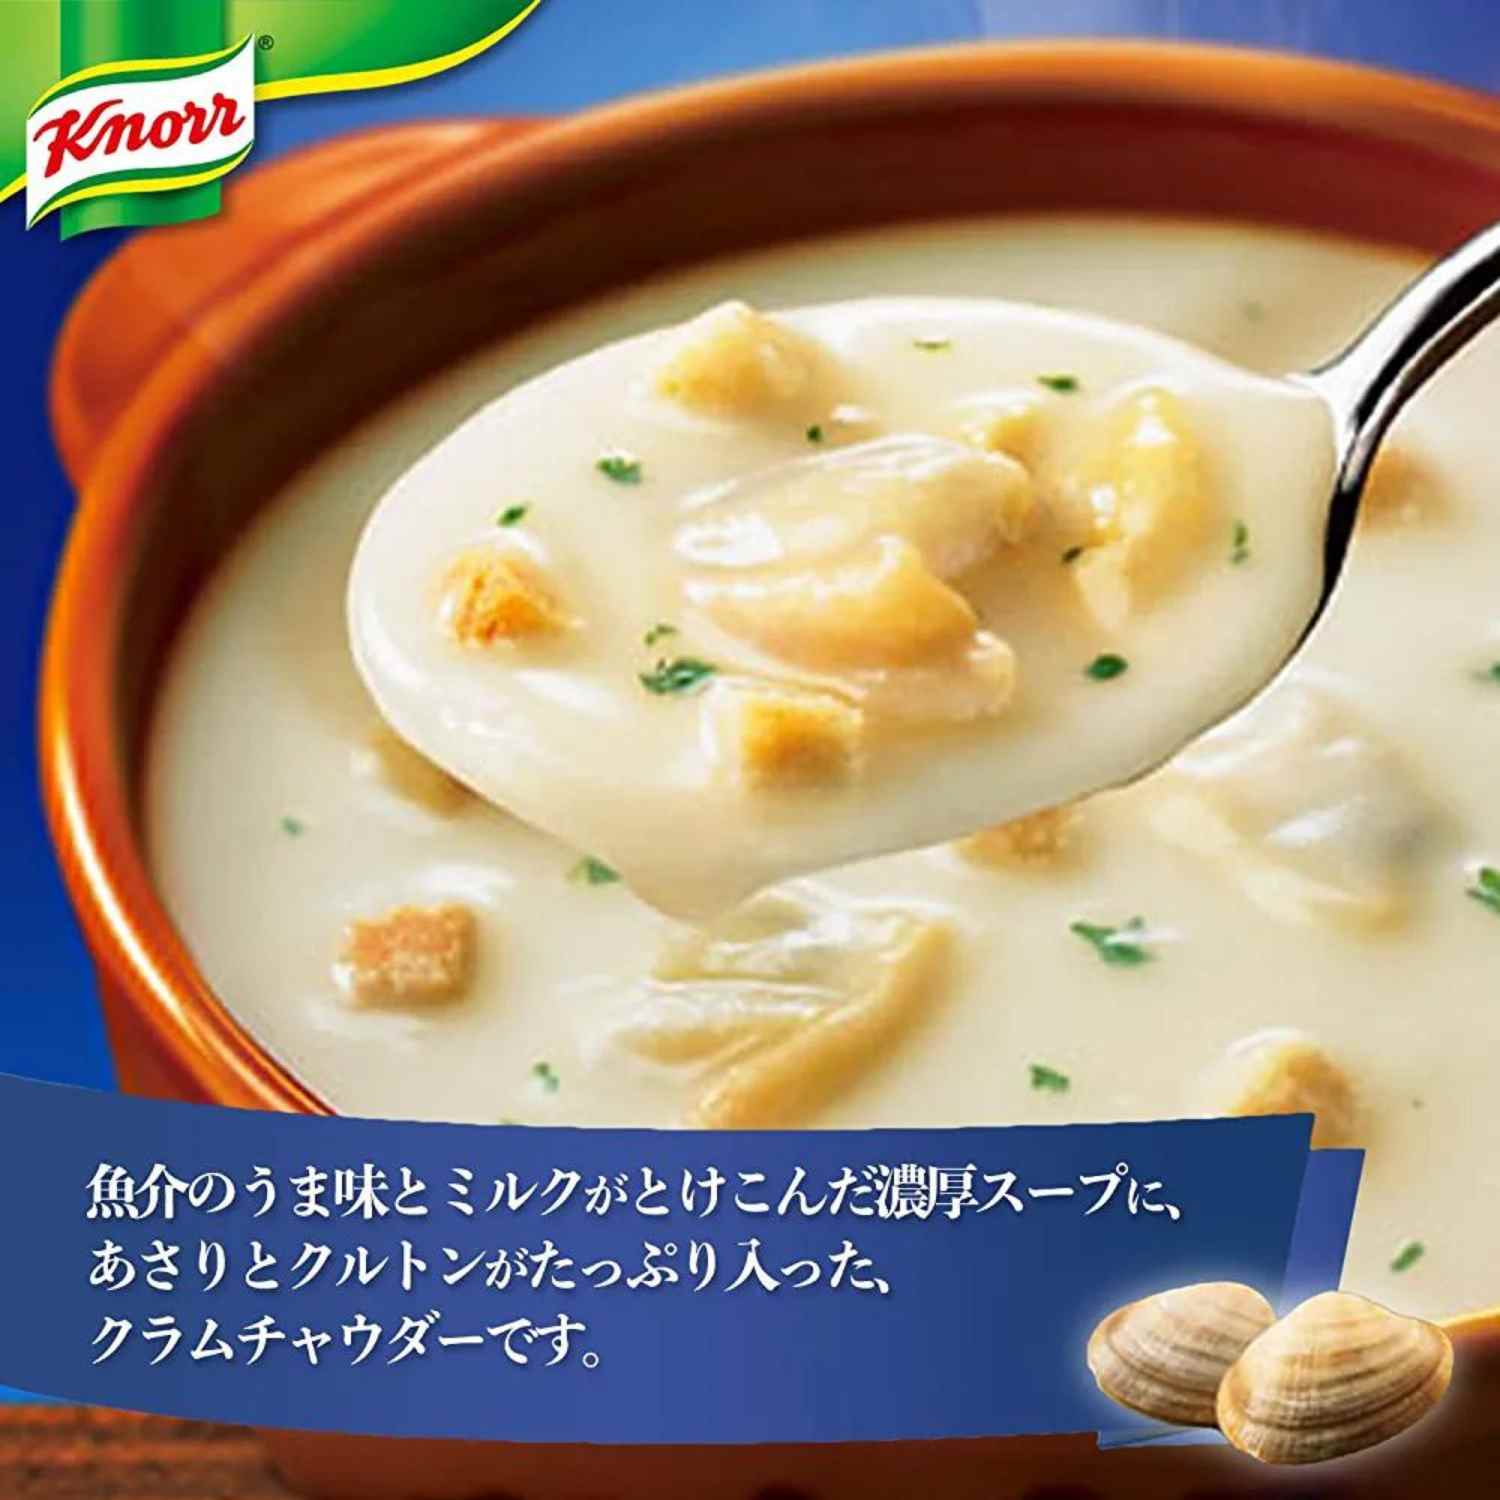 Ajinomoto Cup Soup Variety Set (Pack of 13) - Buy Me Japan